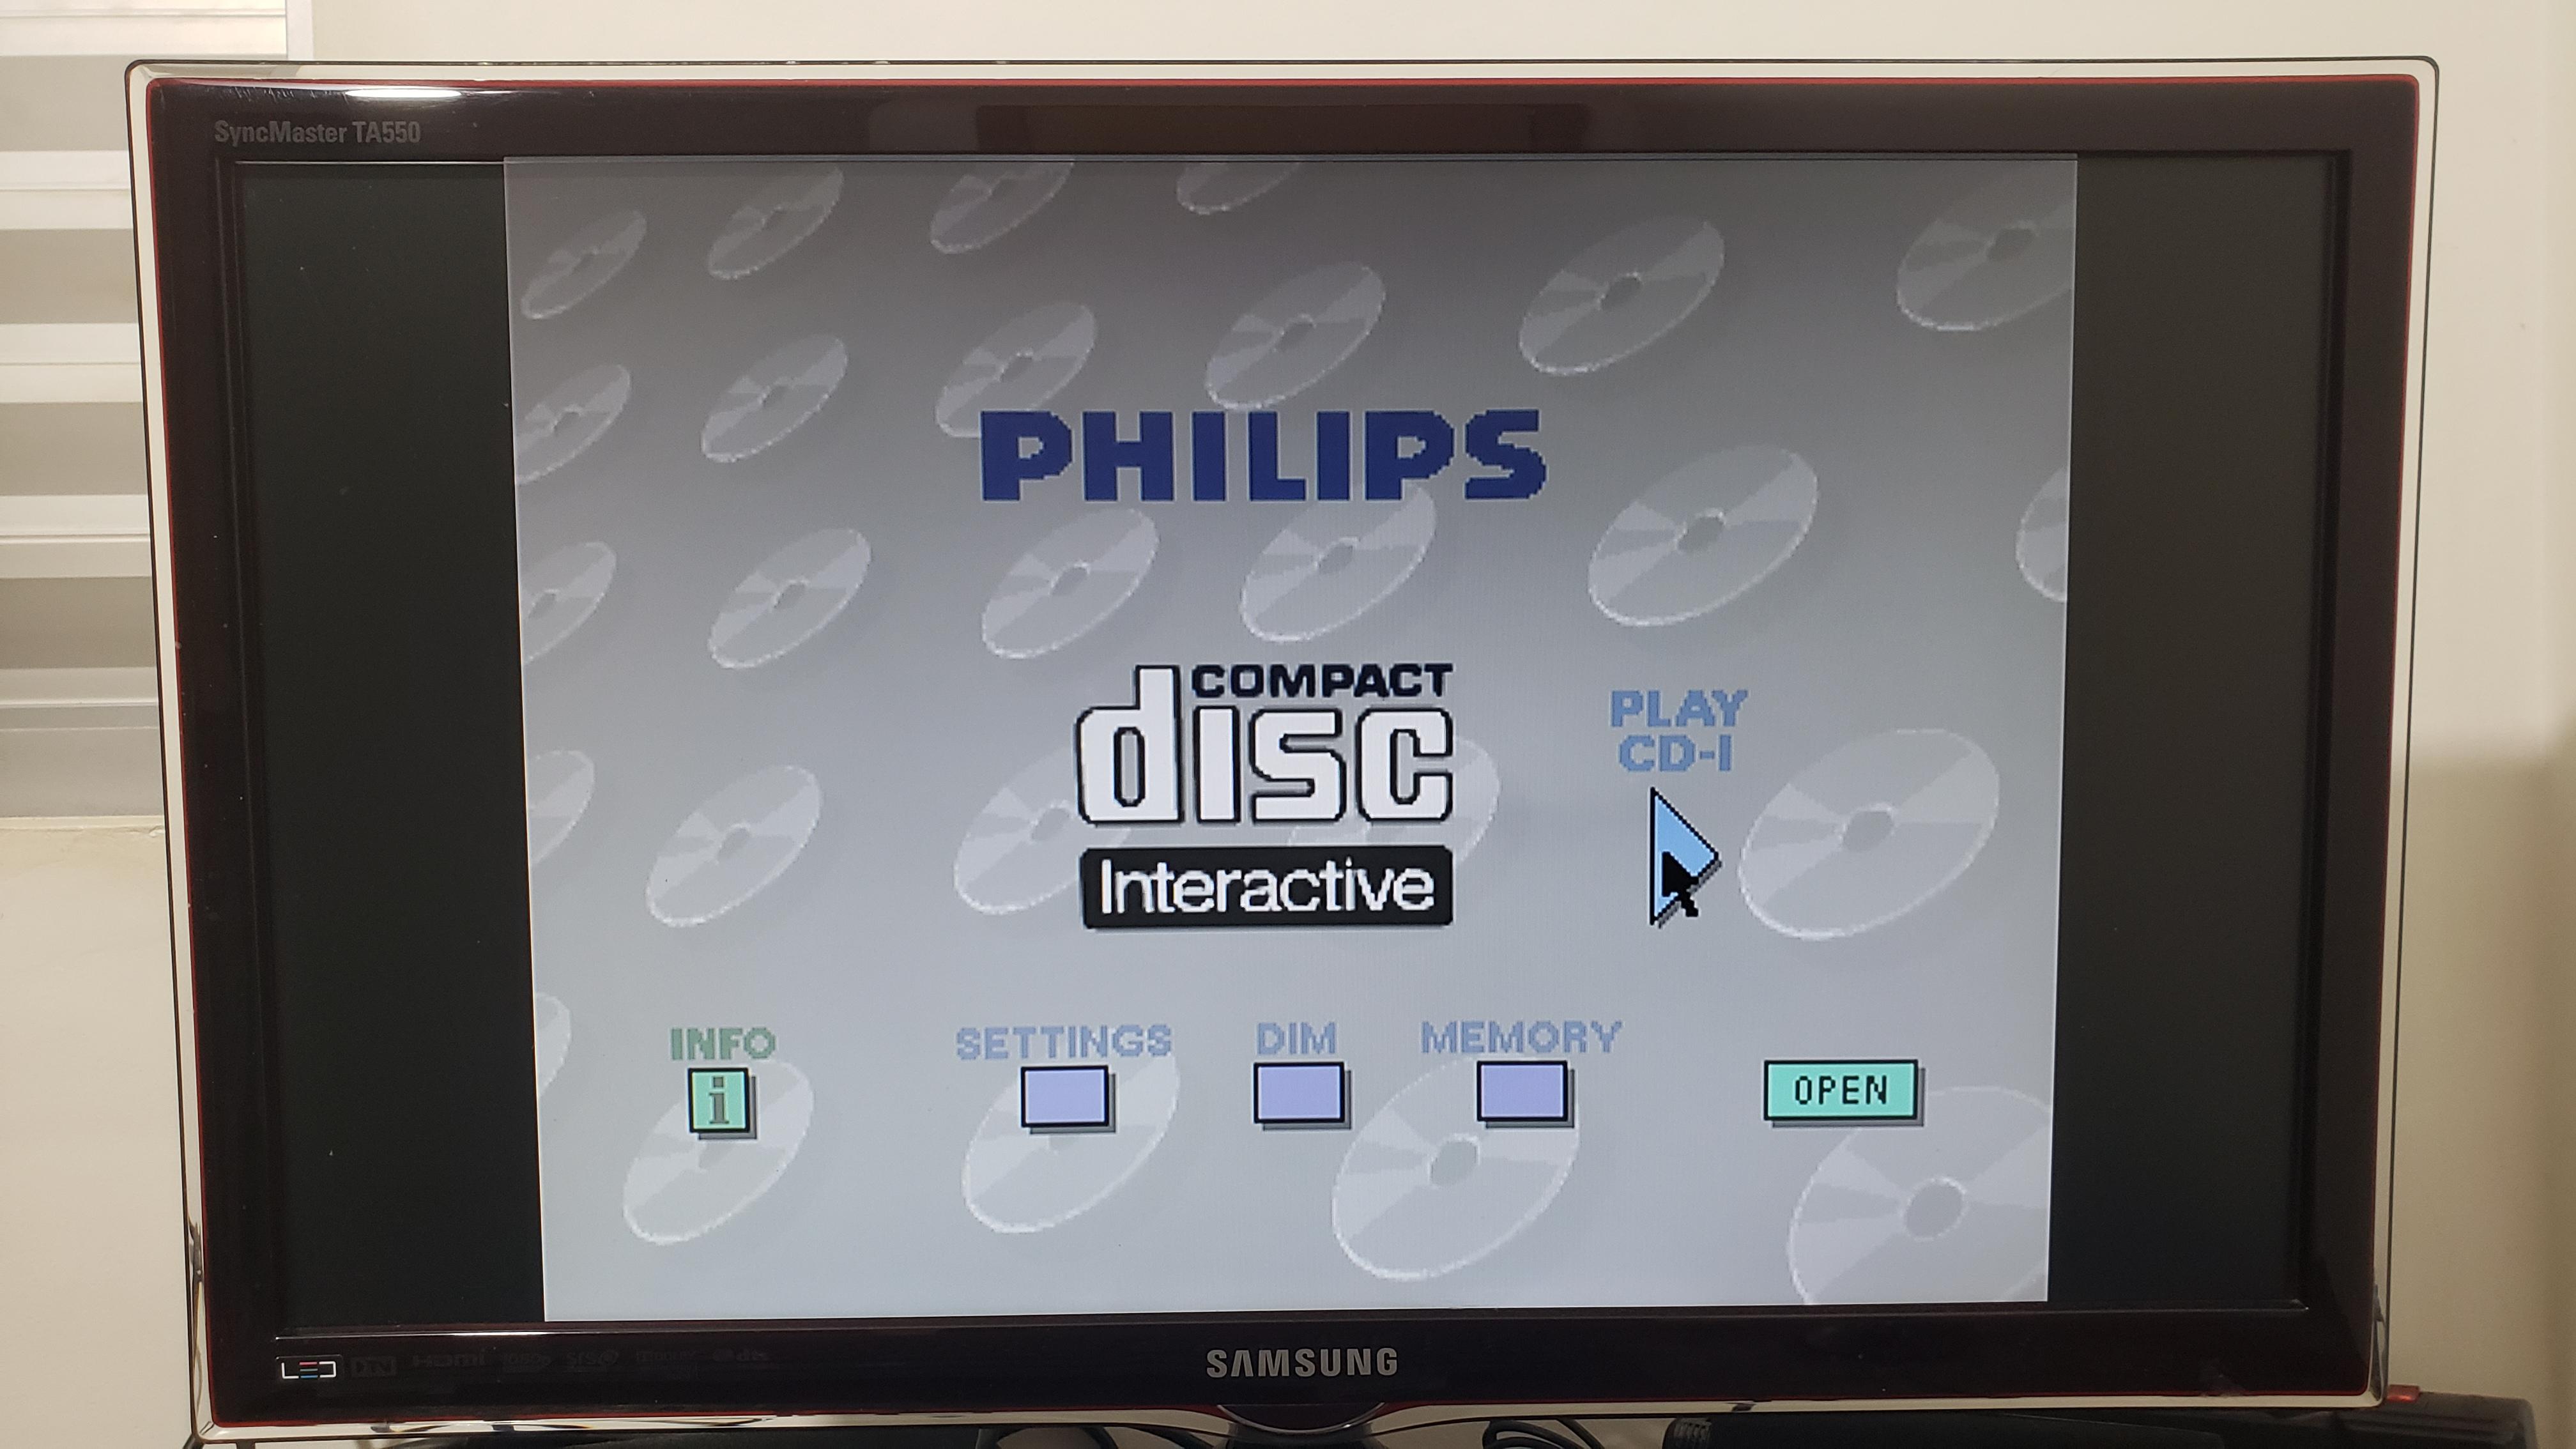 Philips Cdi Emulator Mac